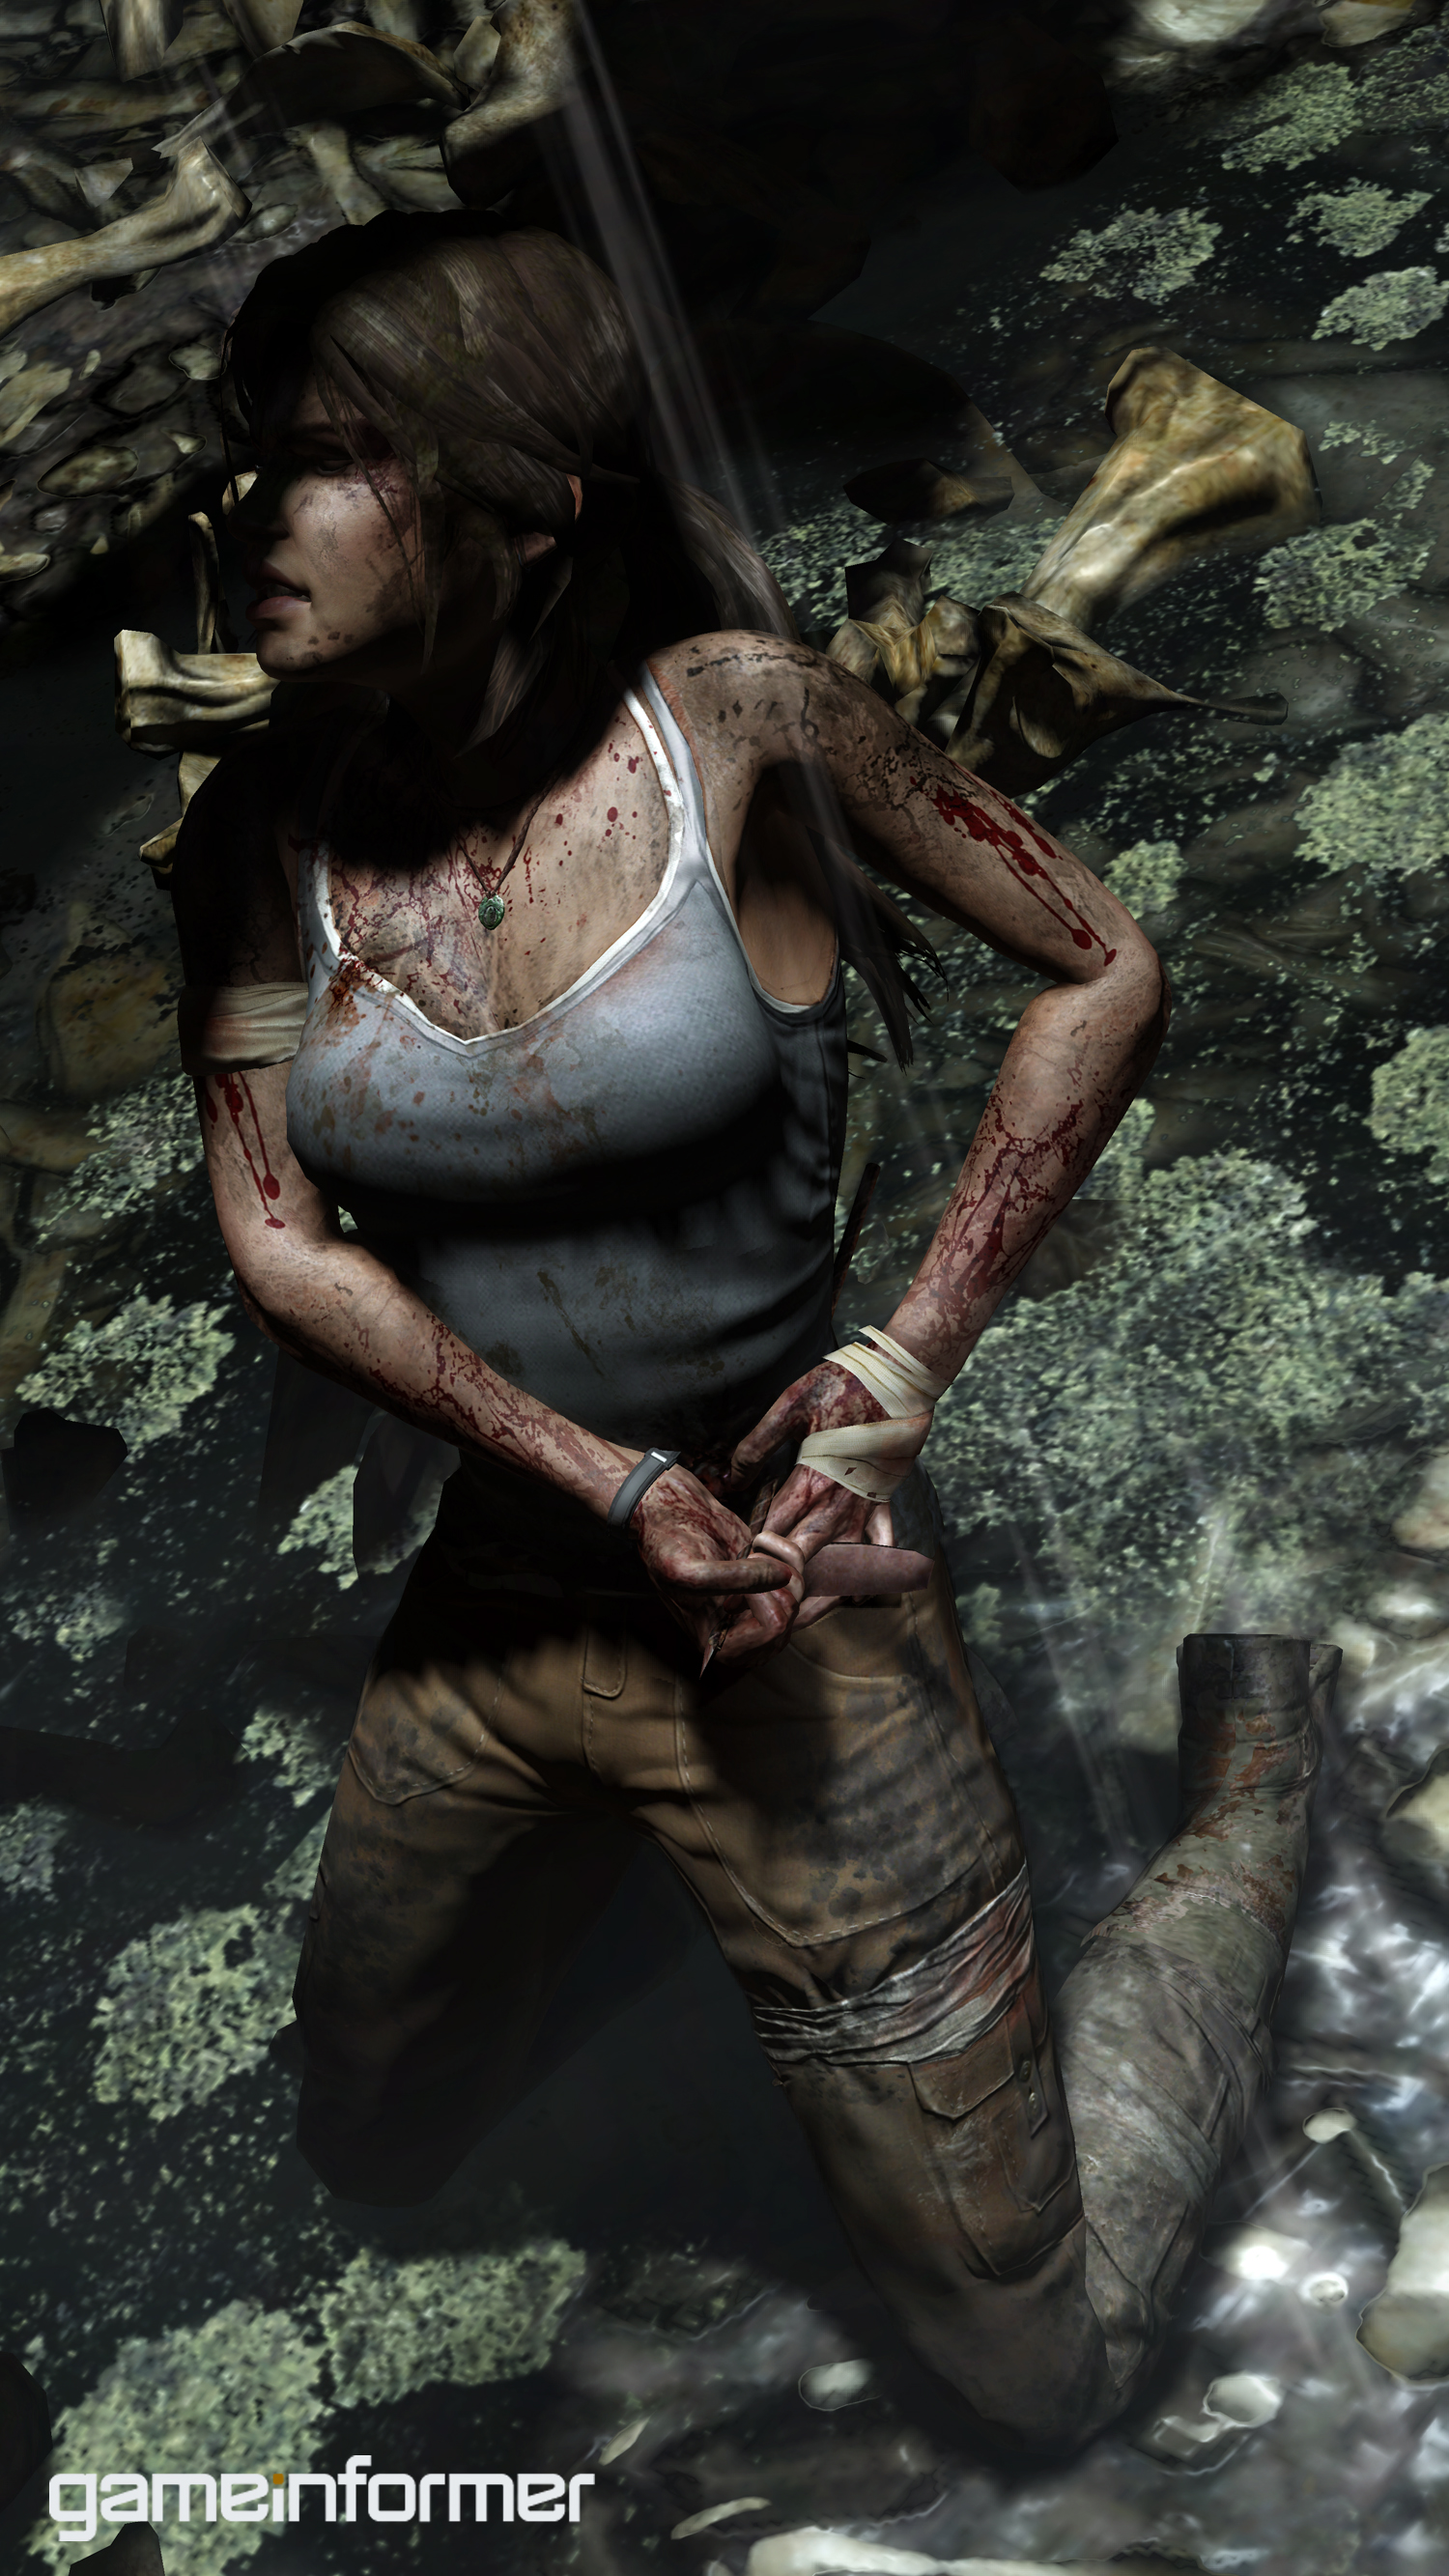 Immagine pubblicata in relazione al seguente contenuto: On line i primi screenshots di Tomb Raider next generation | Nome immagine: news14437_1.jpg